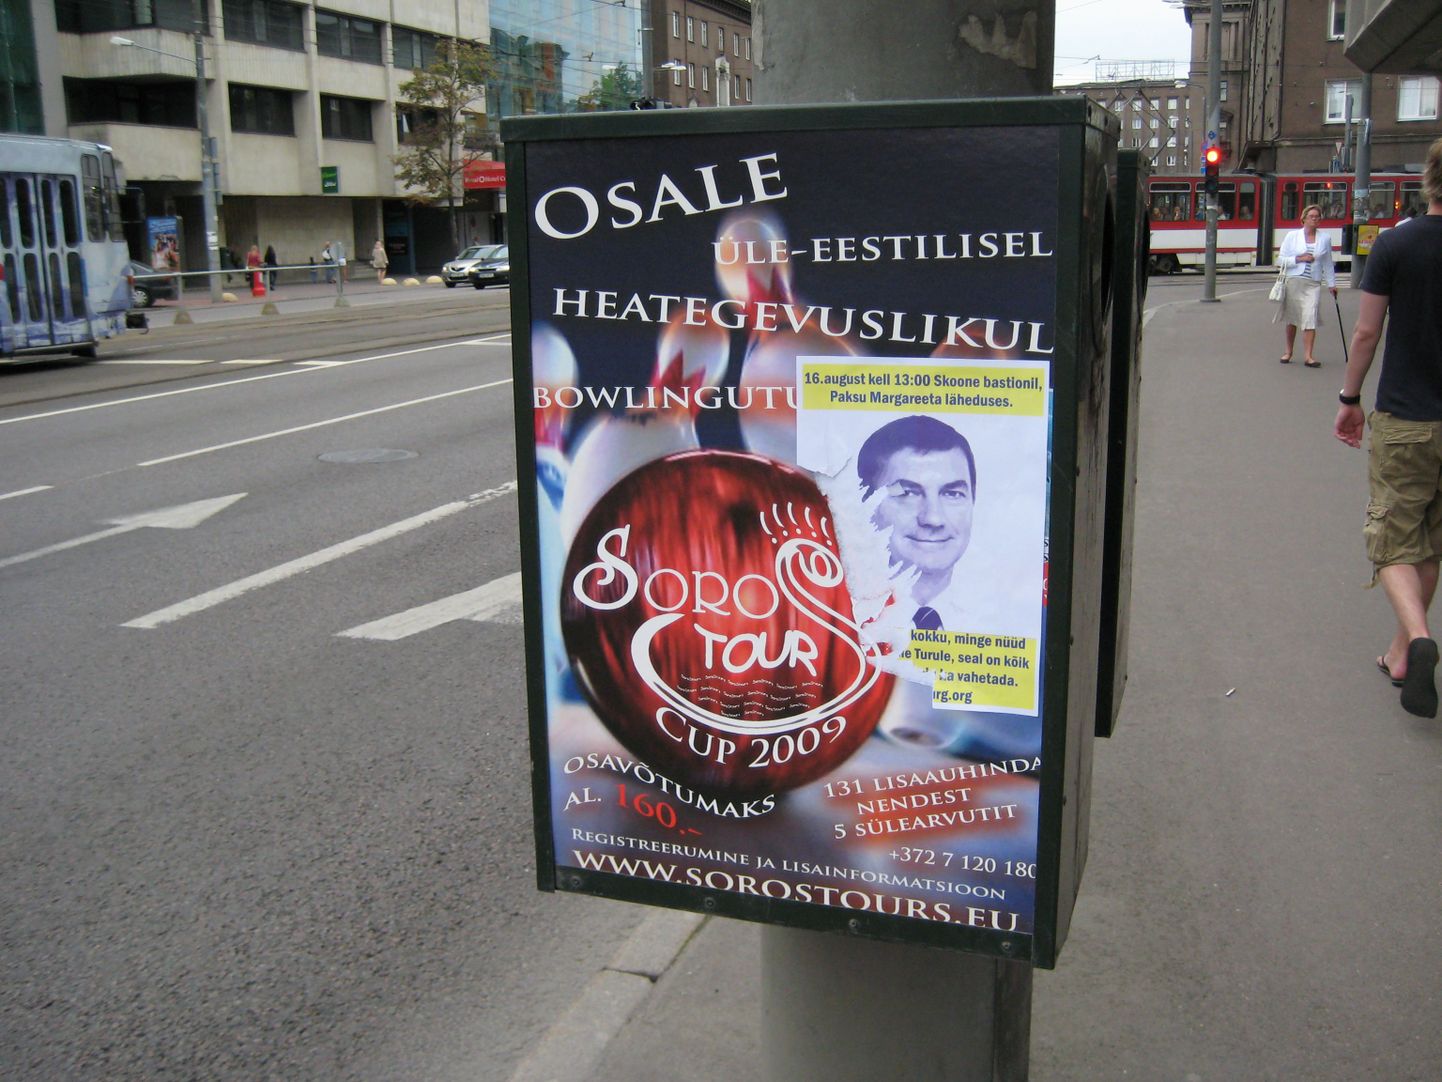 Vaba turu organiseerijad kasutasid reklaamis ka peaminister Andrus Ansipi fotot.